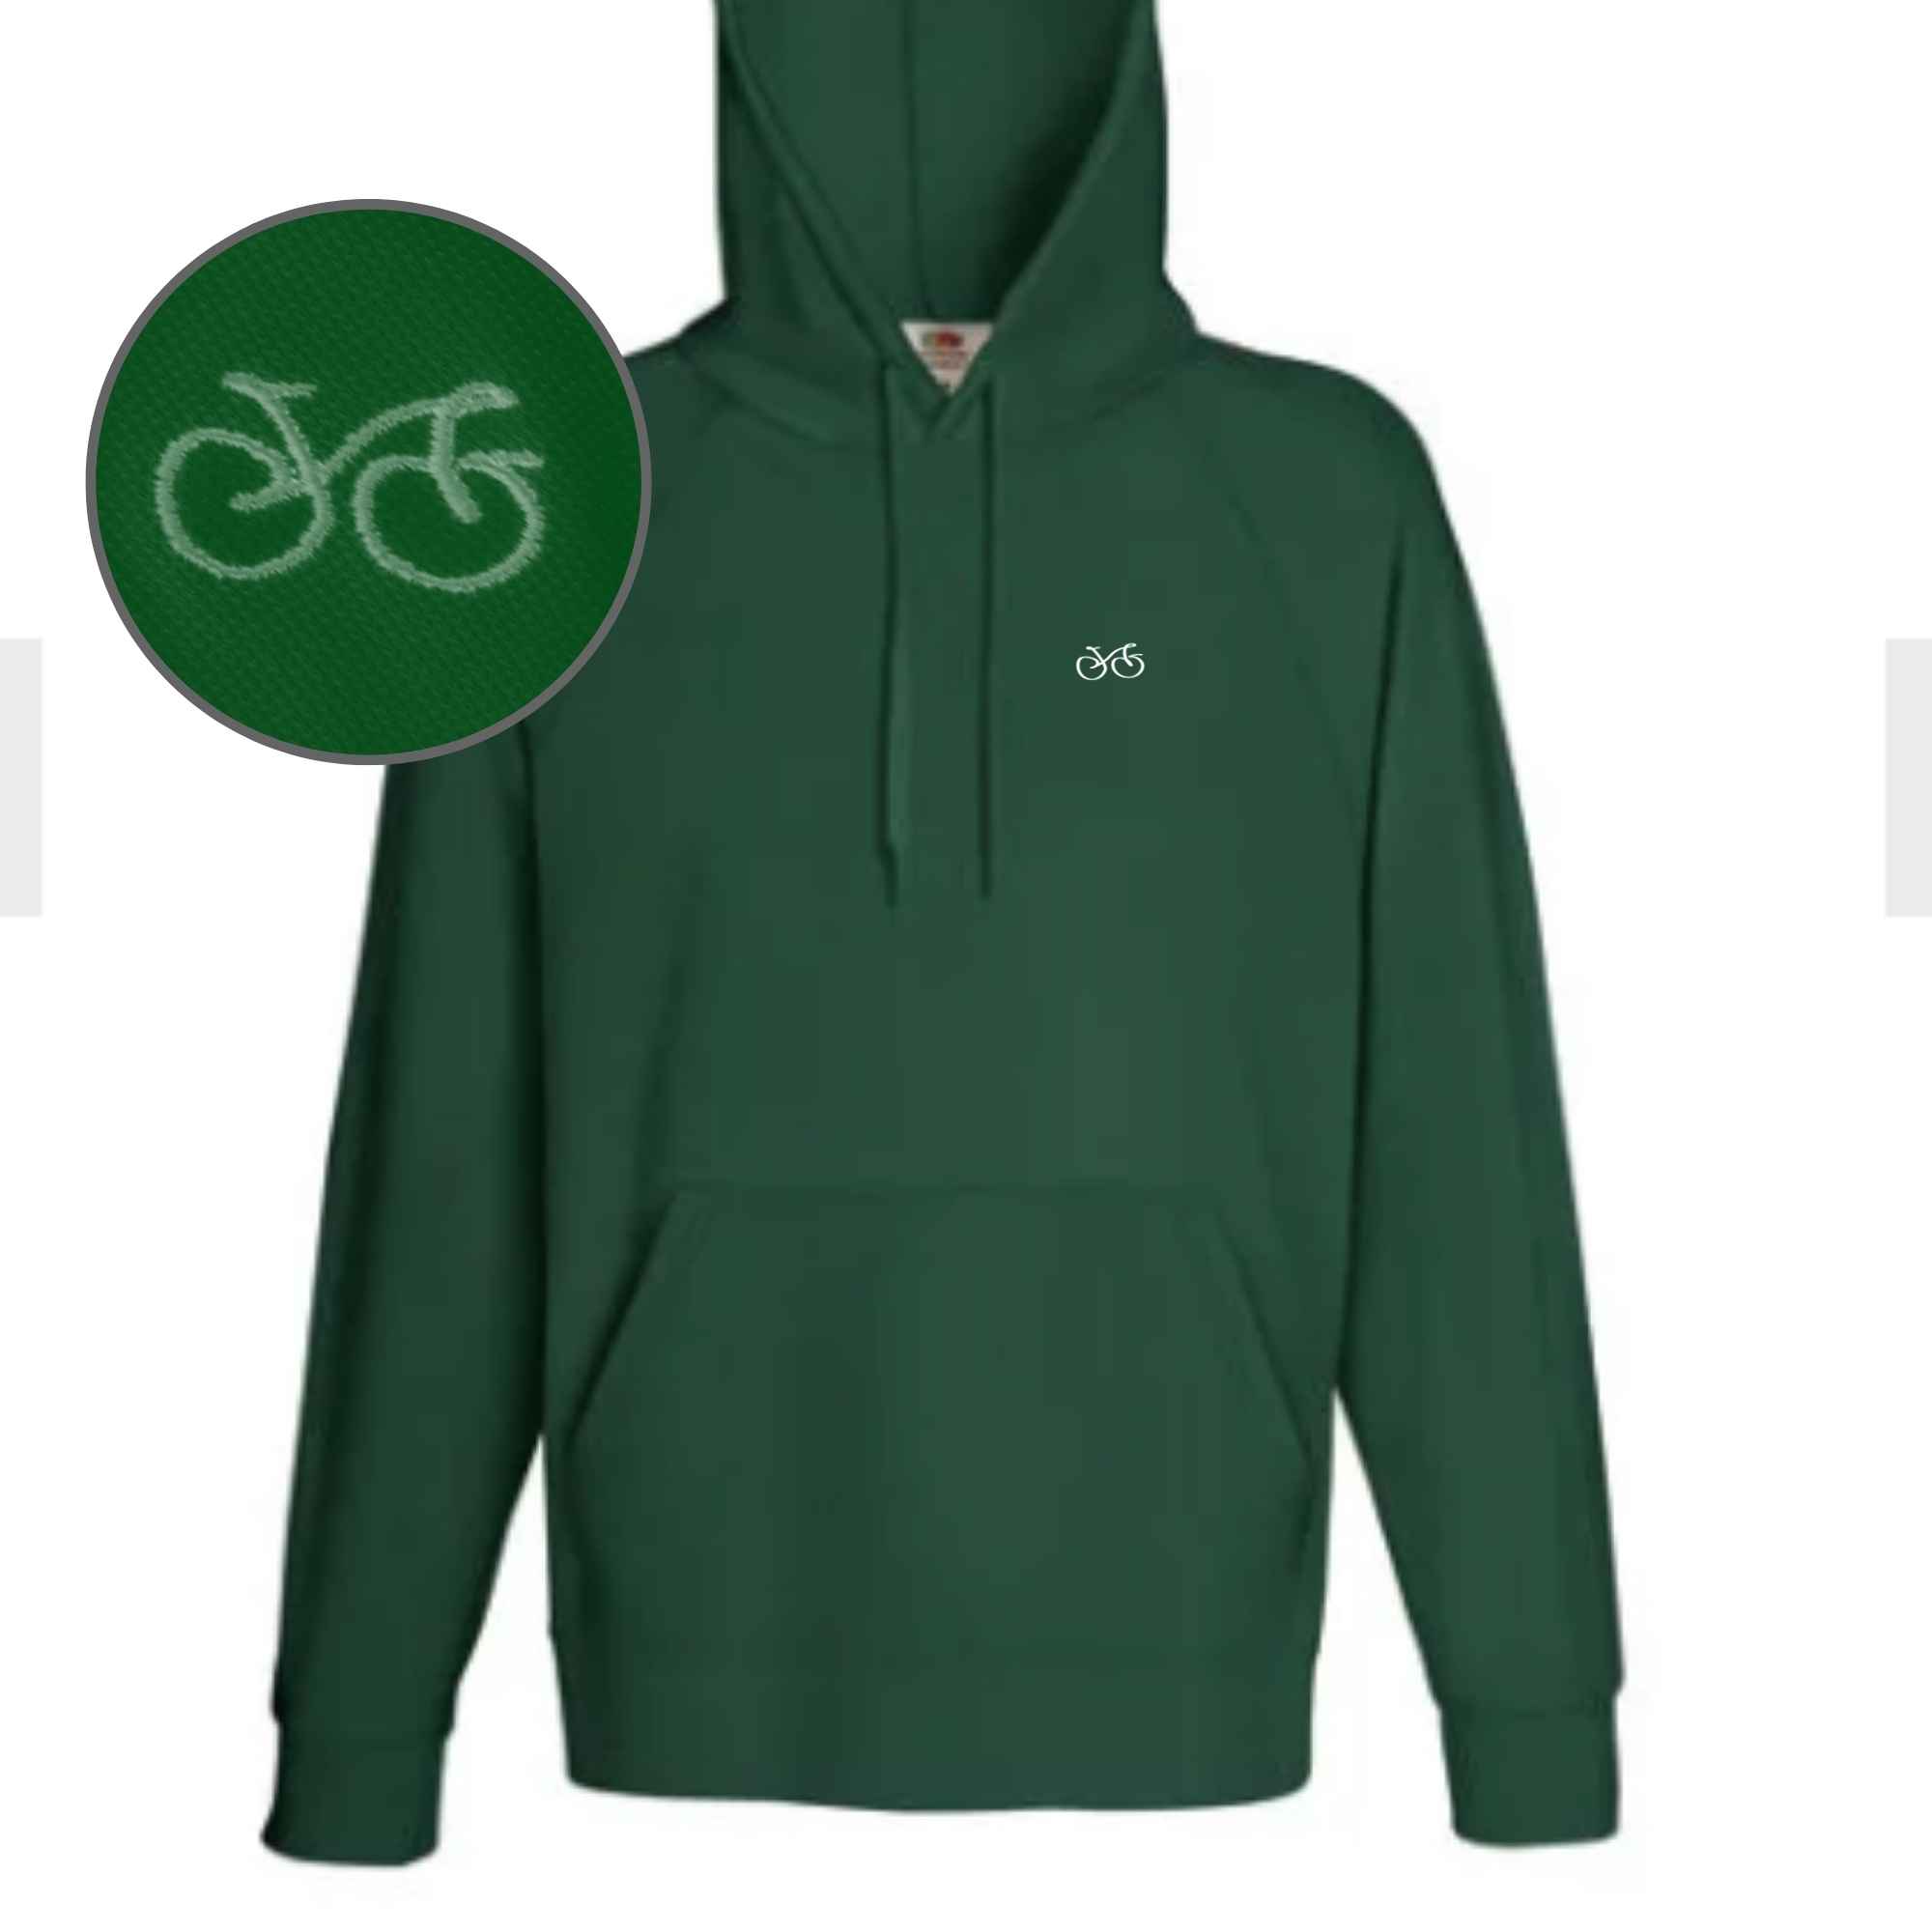 Hoodie bzw. Kapuzenpullover mit Fahrrad-Motiv bestickt in der Farbe Grün